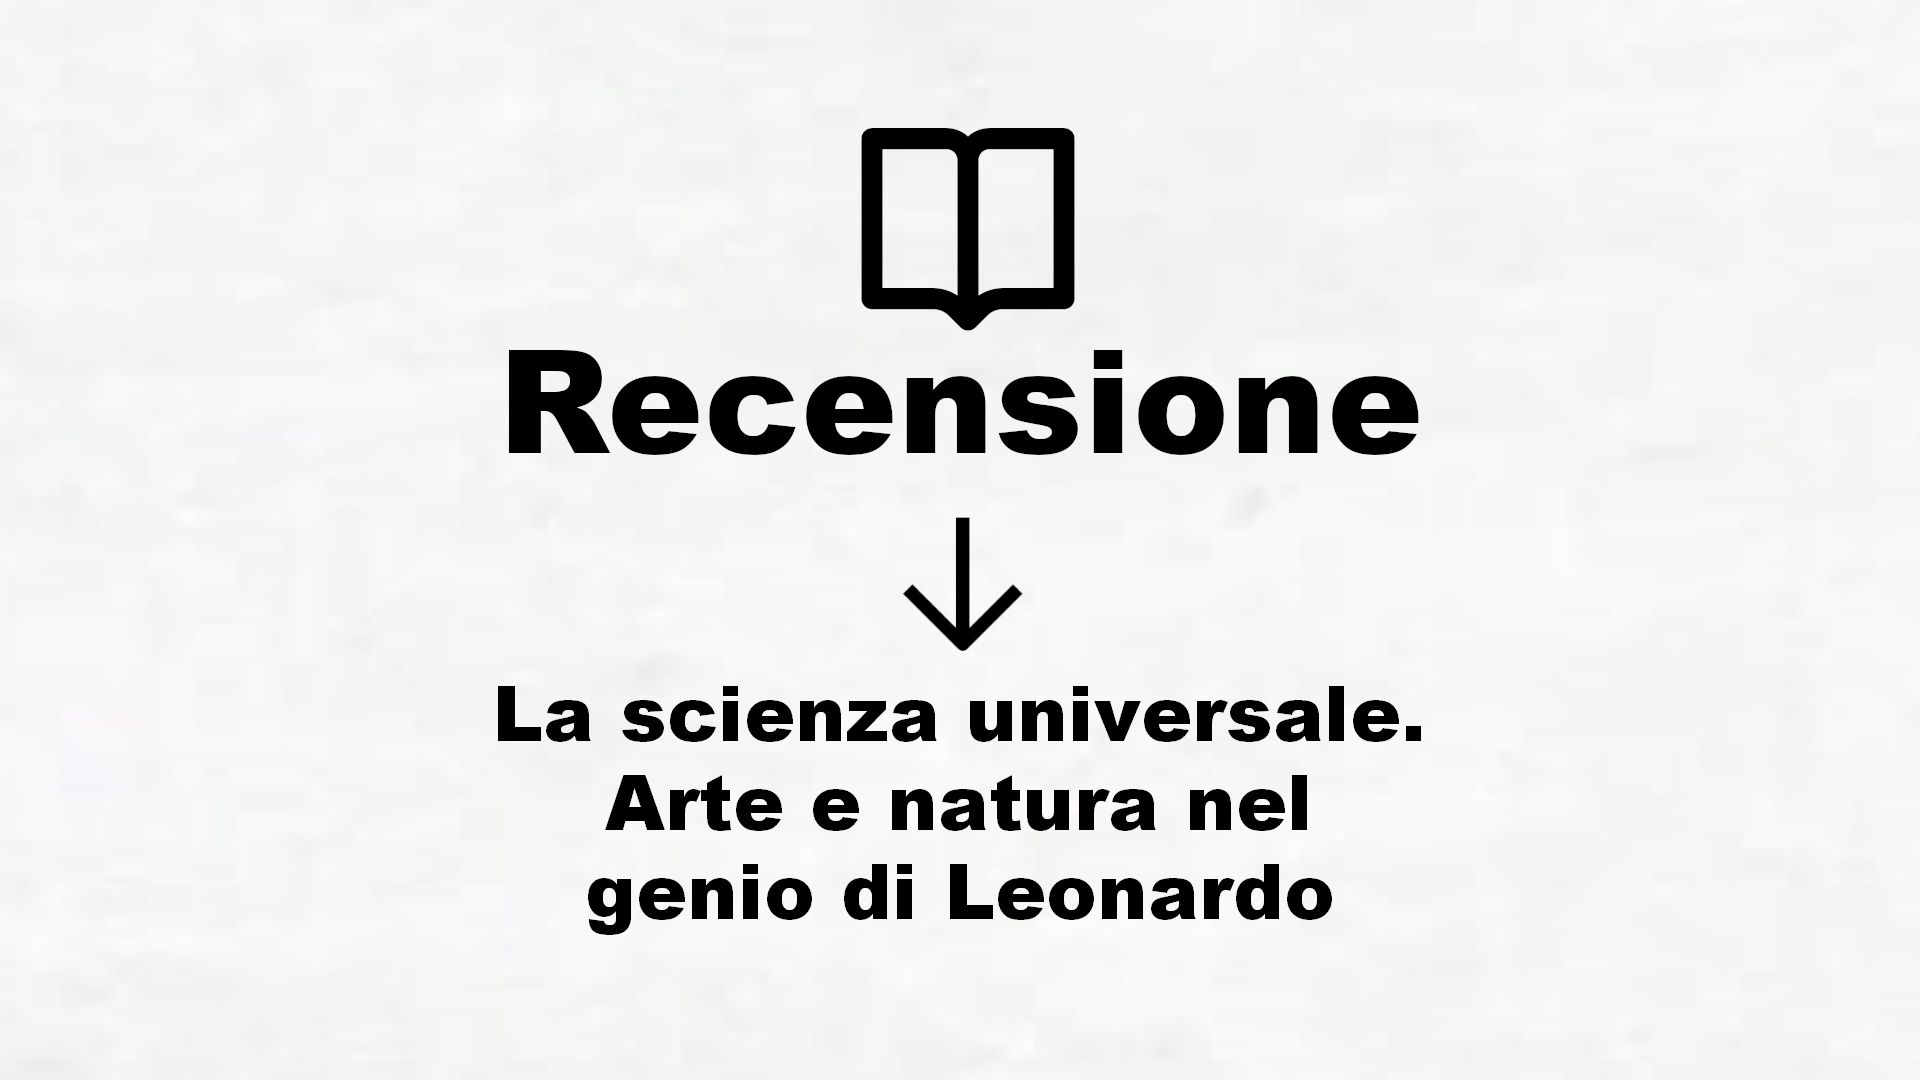 La scienza universale. Arte e natura nel genio di Leonardo – Recensione Libro